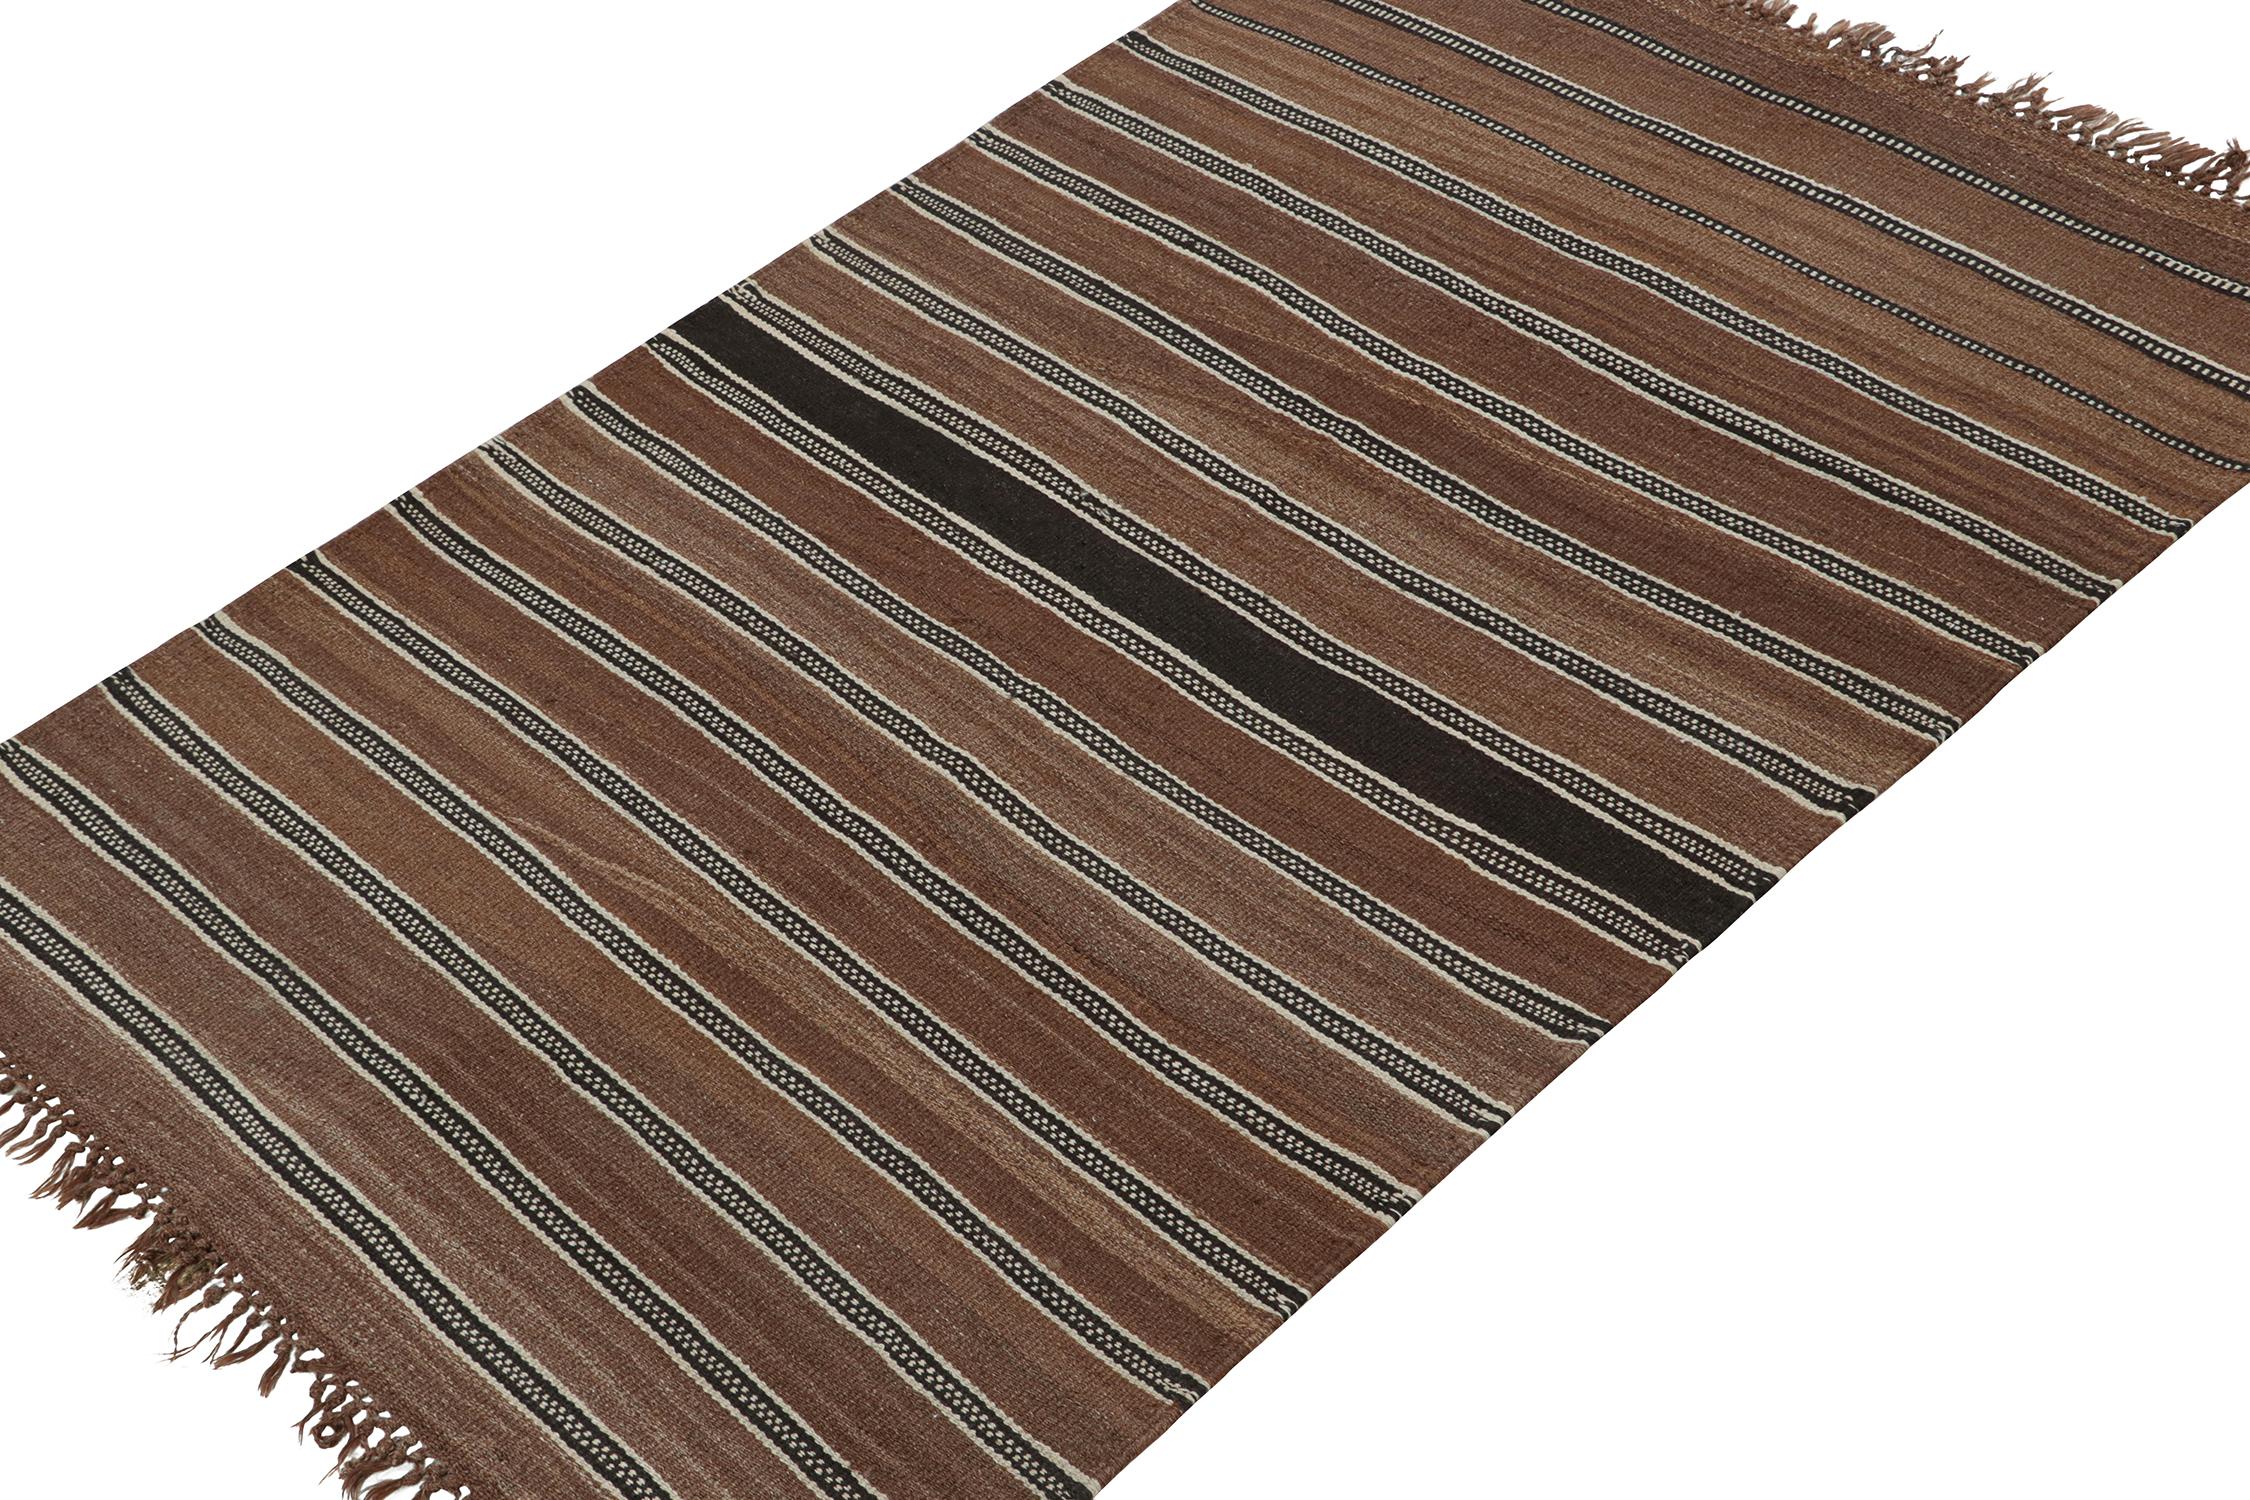 Dieser alte persische 5x7-Kilim ist ein Stammesteppich mit Varamin-Herkunft. Er ist aus Wolle handgewebt und stammt aus der Zeit um 1950-1960.

Weiter zum Design:

Das minimalistische Design bevorzugt Streifen in Schwarz und Weiß auf einem satten